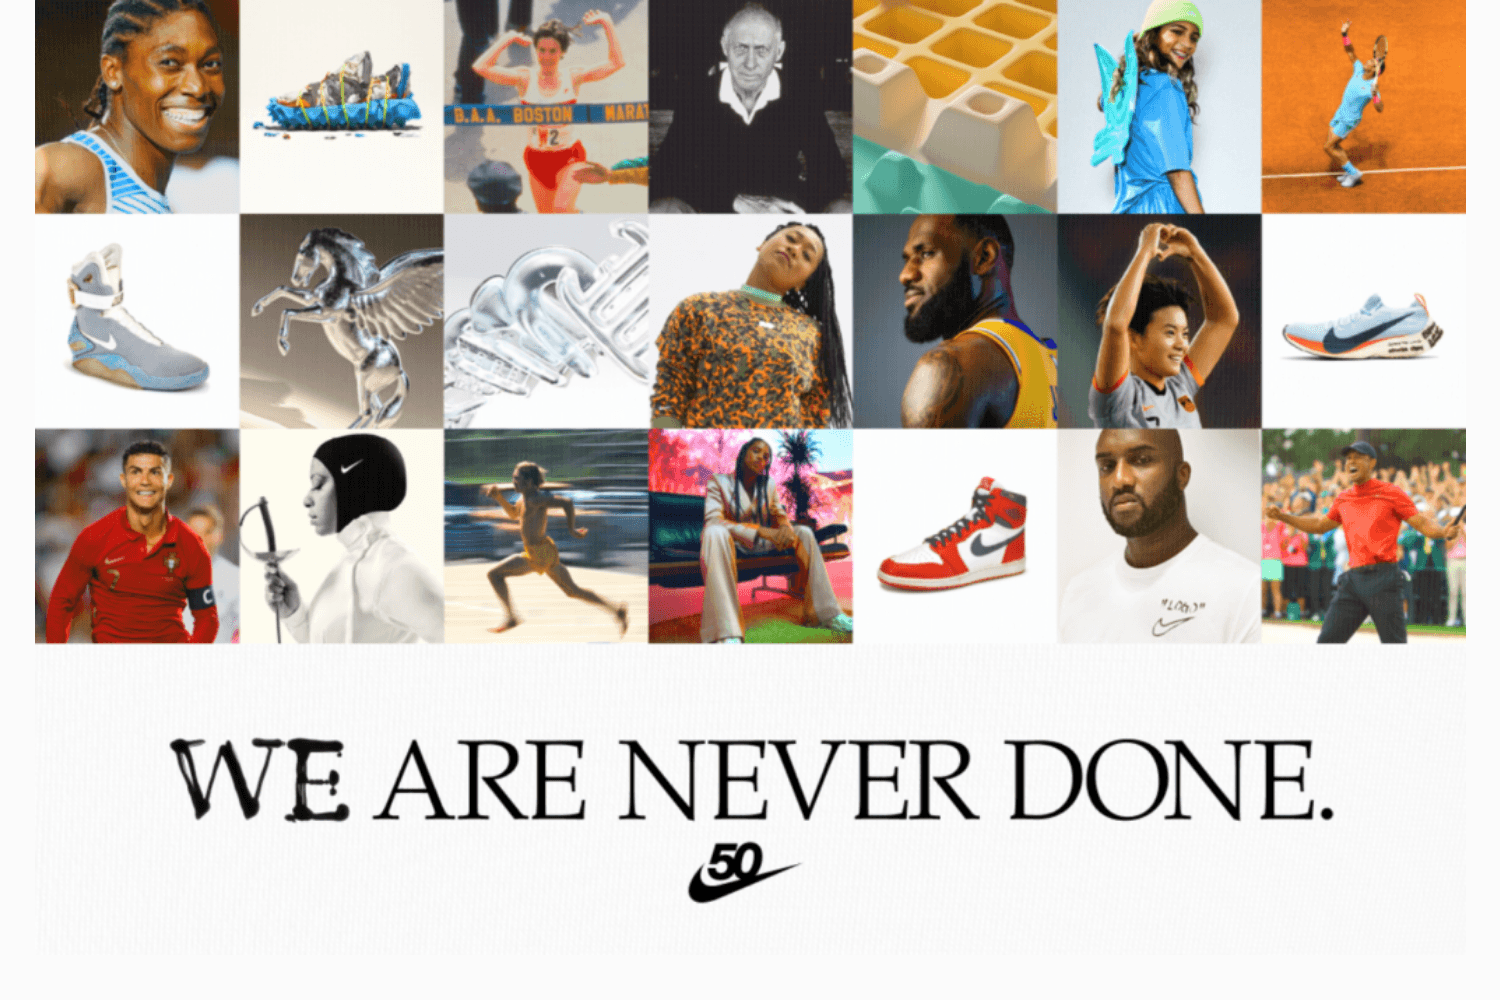 Nike feiert sein 50-jähriges Bestehen mit einem umfangreichen Programm